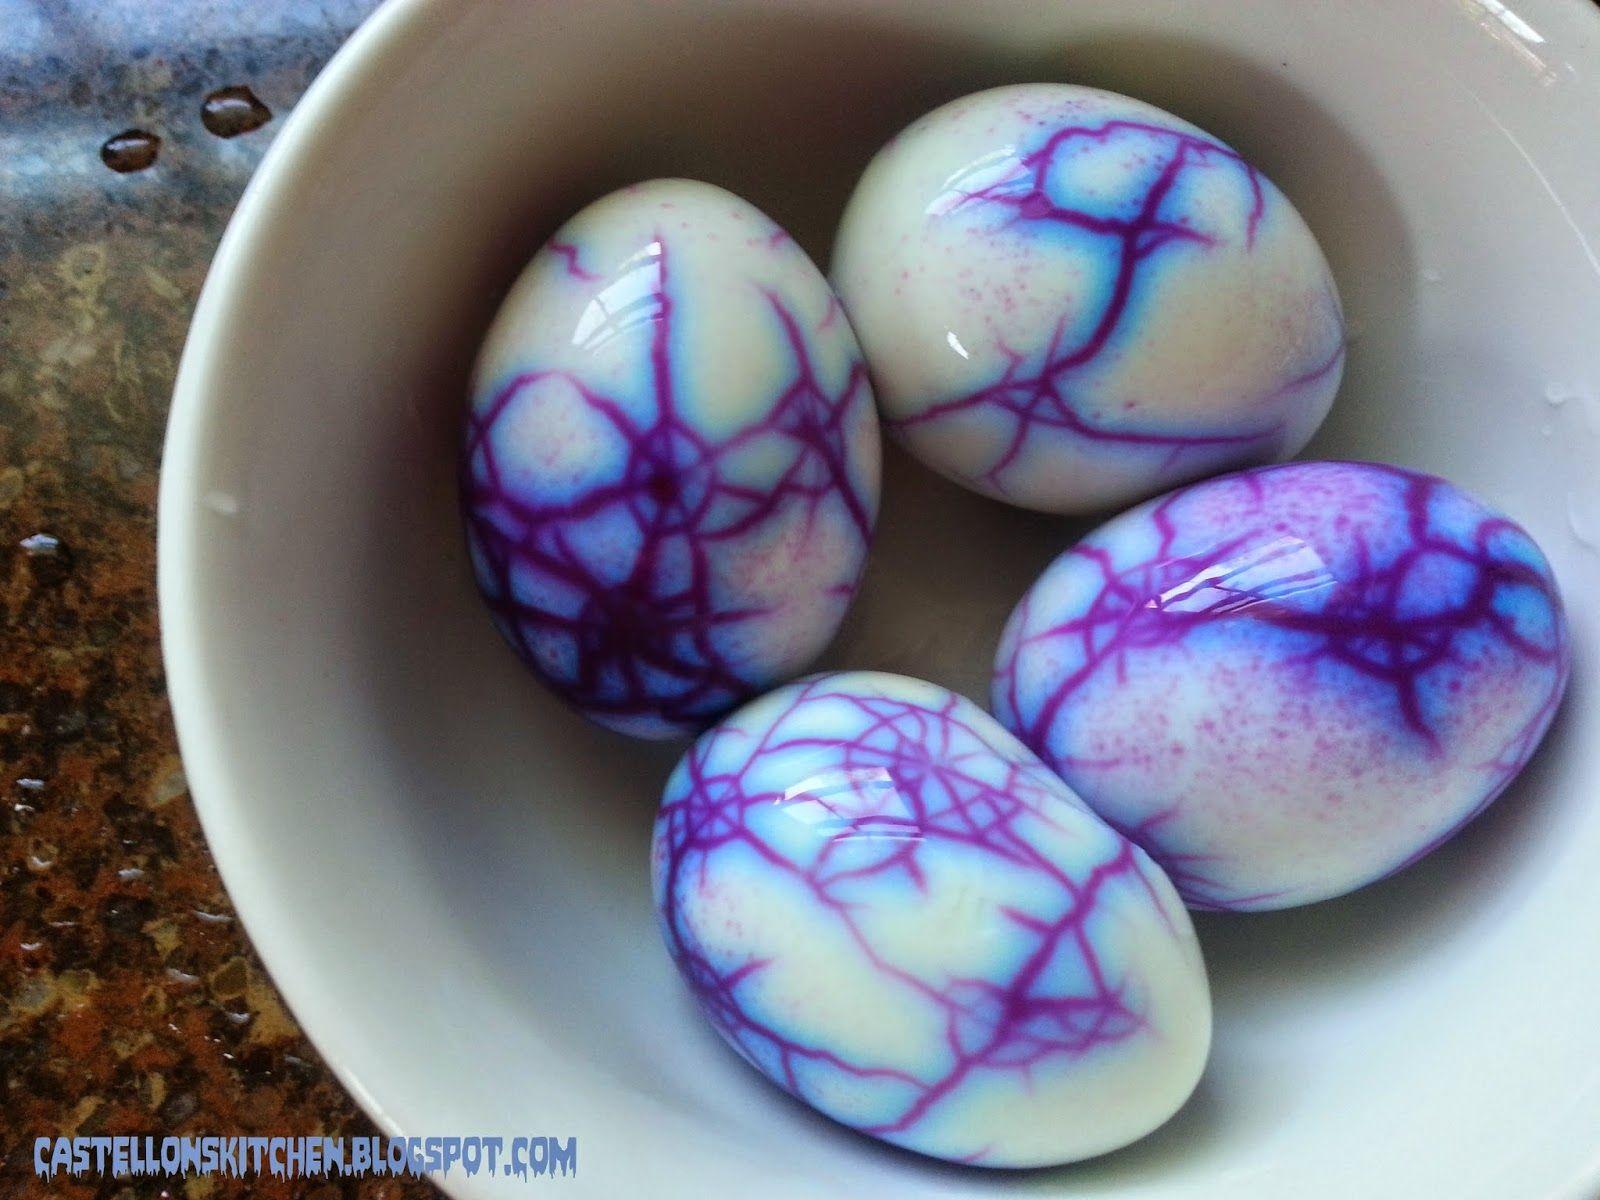 Castellon's Kitchen: Spider Web Eggs (Guacamole Deviled Eggs)